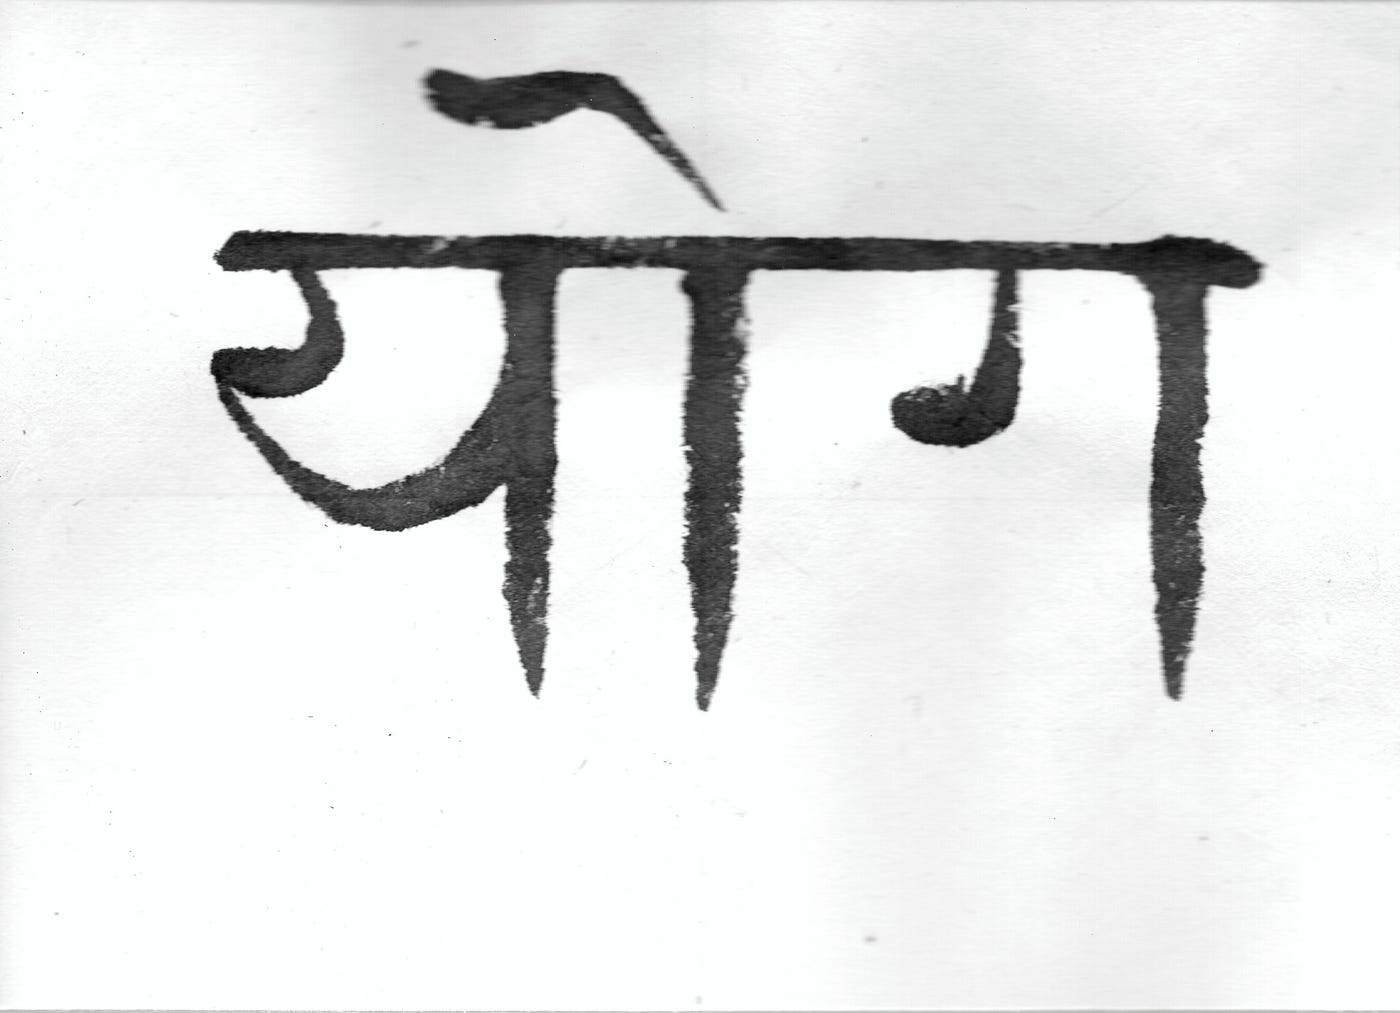 sanskrit calligraphy